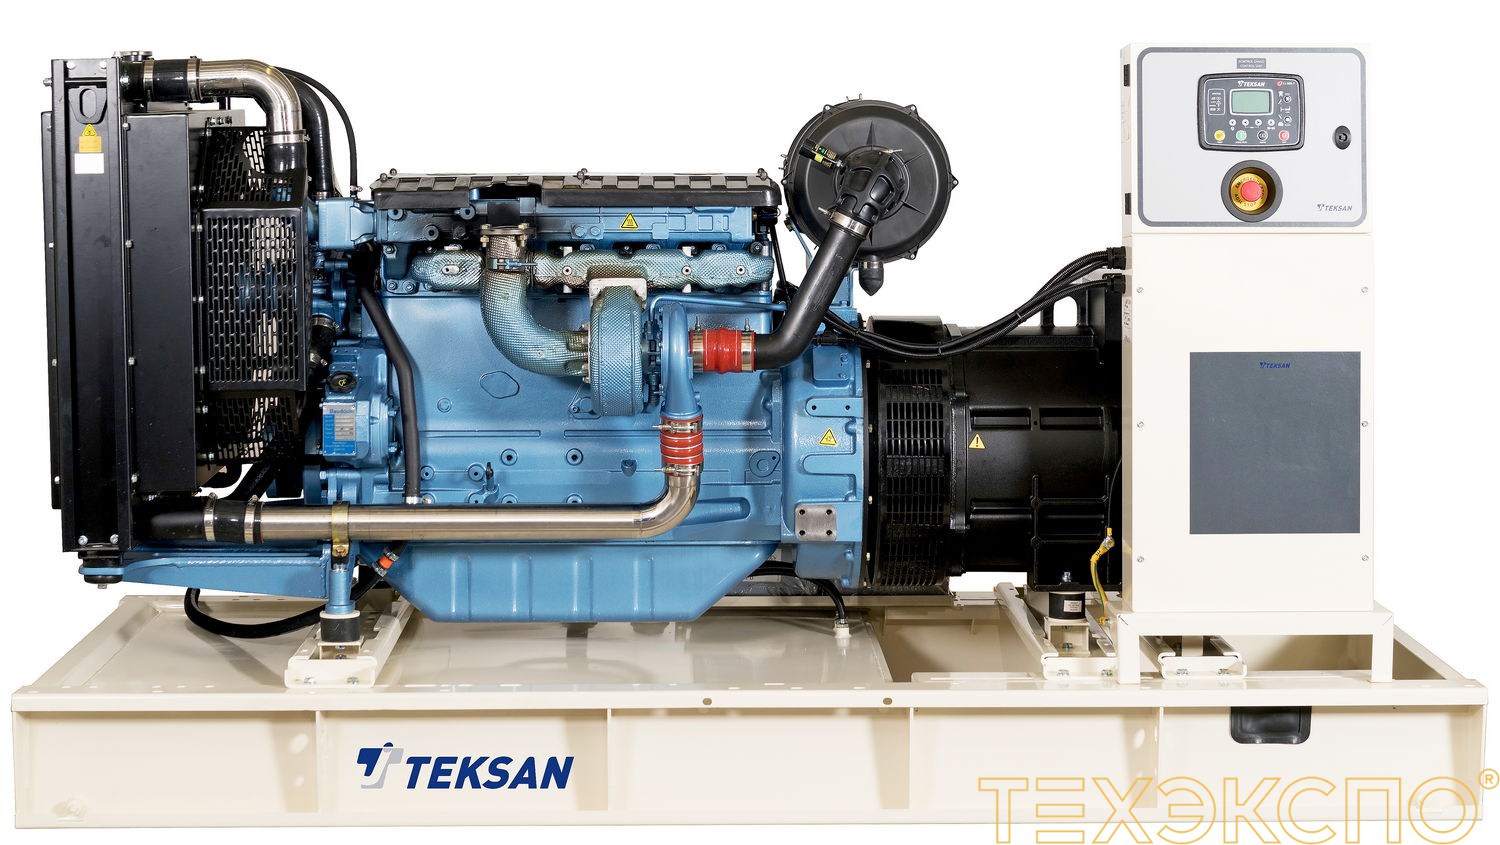 Teksan TJ220BD - ДЭС 160 кВт в Санкт-Петербурге за 2 053 389 рублей | Дизельная электростанция в Техэкспо